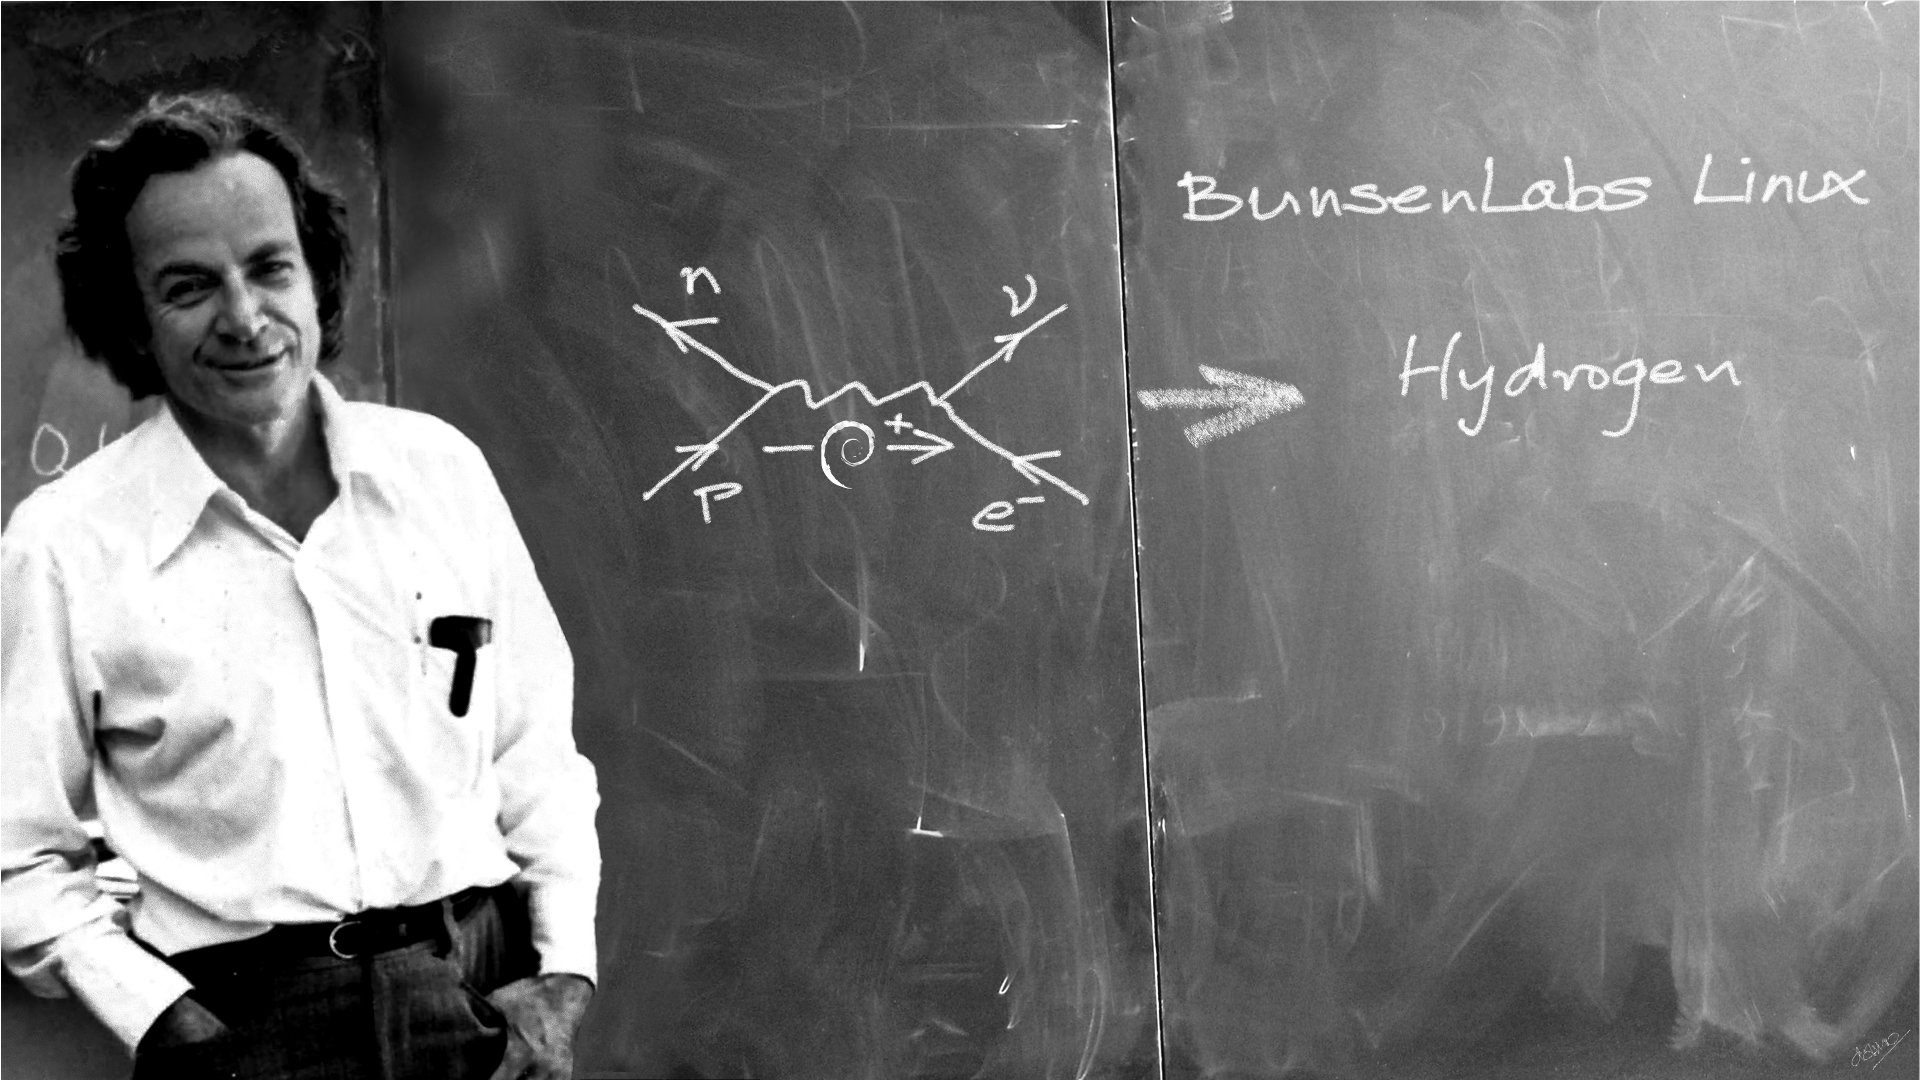 Feynman physics is like sex